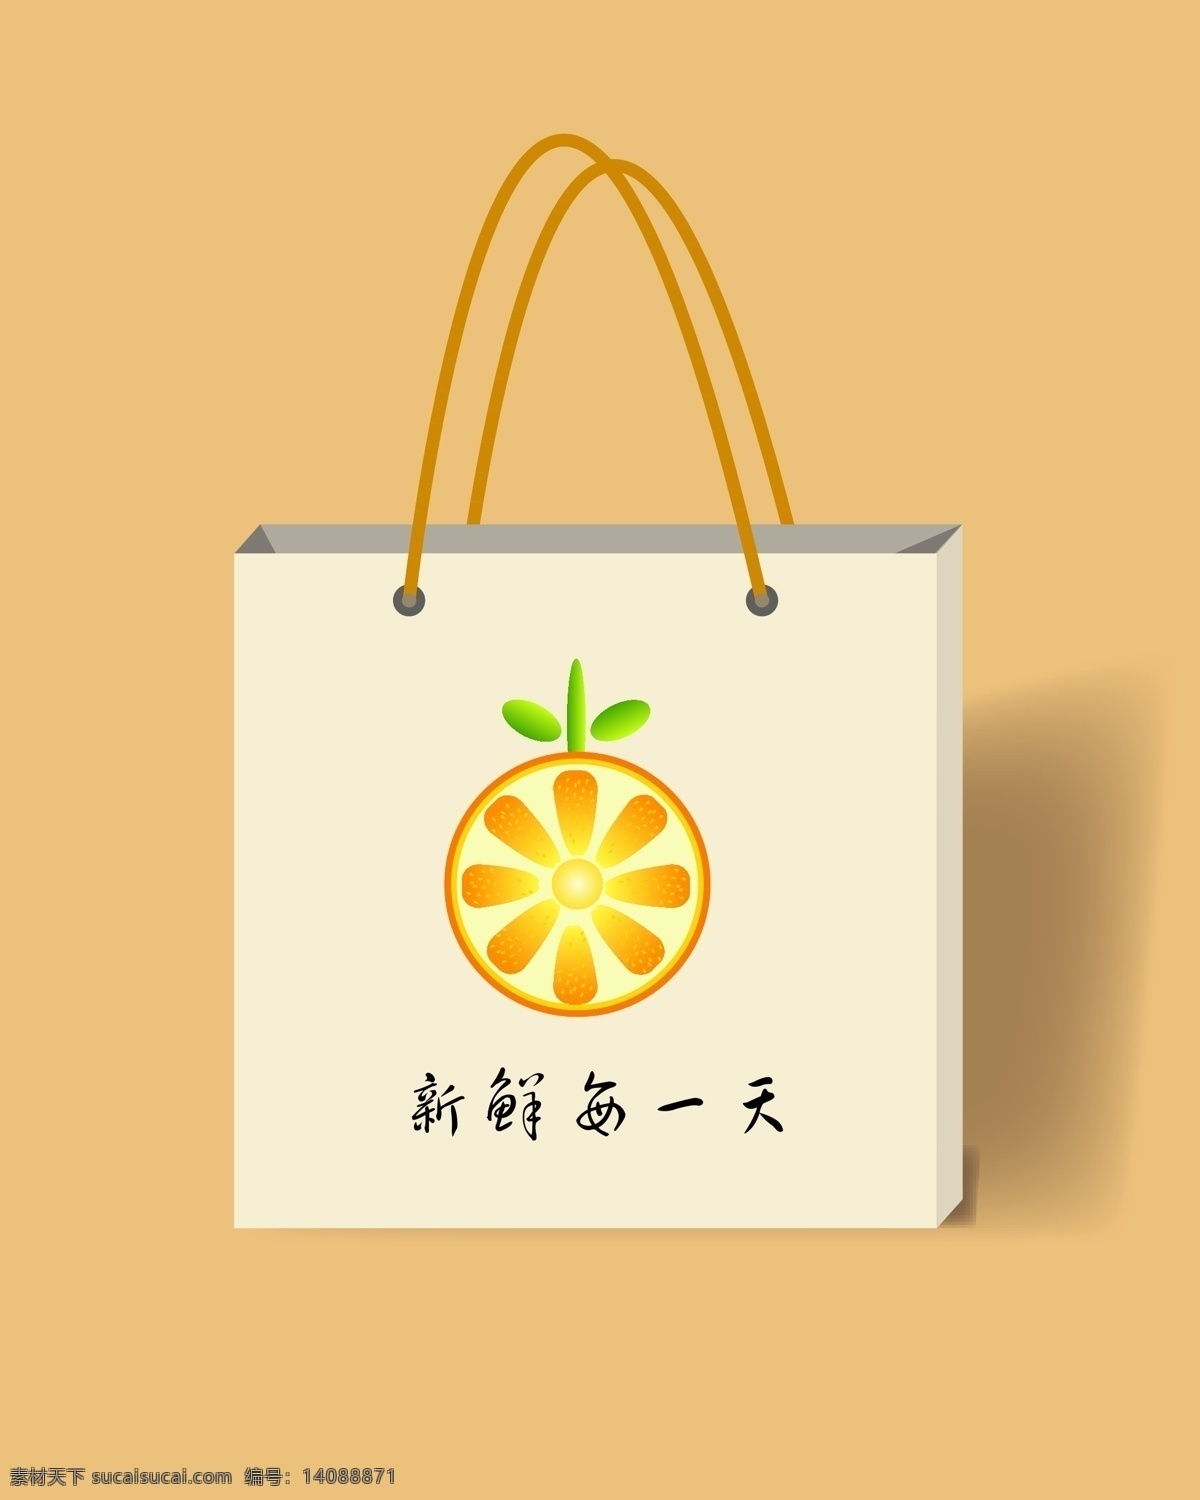 橙子包装袋 包装设计 平面设计 橙子 纸袋 装饰 黄色